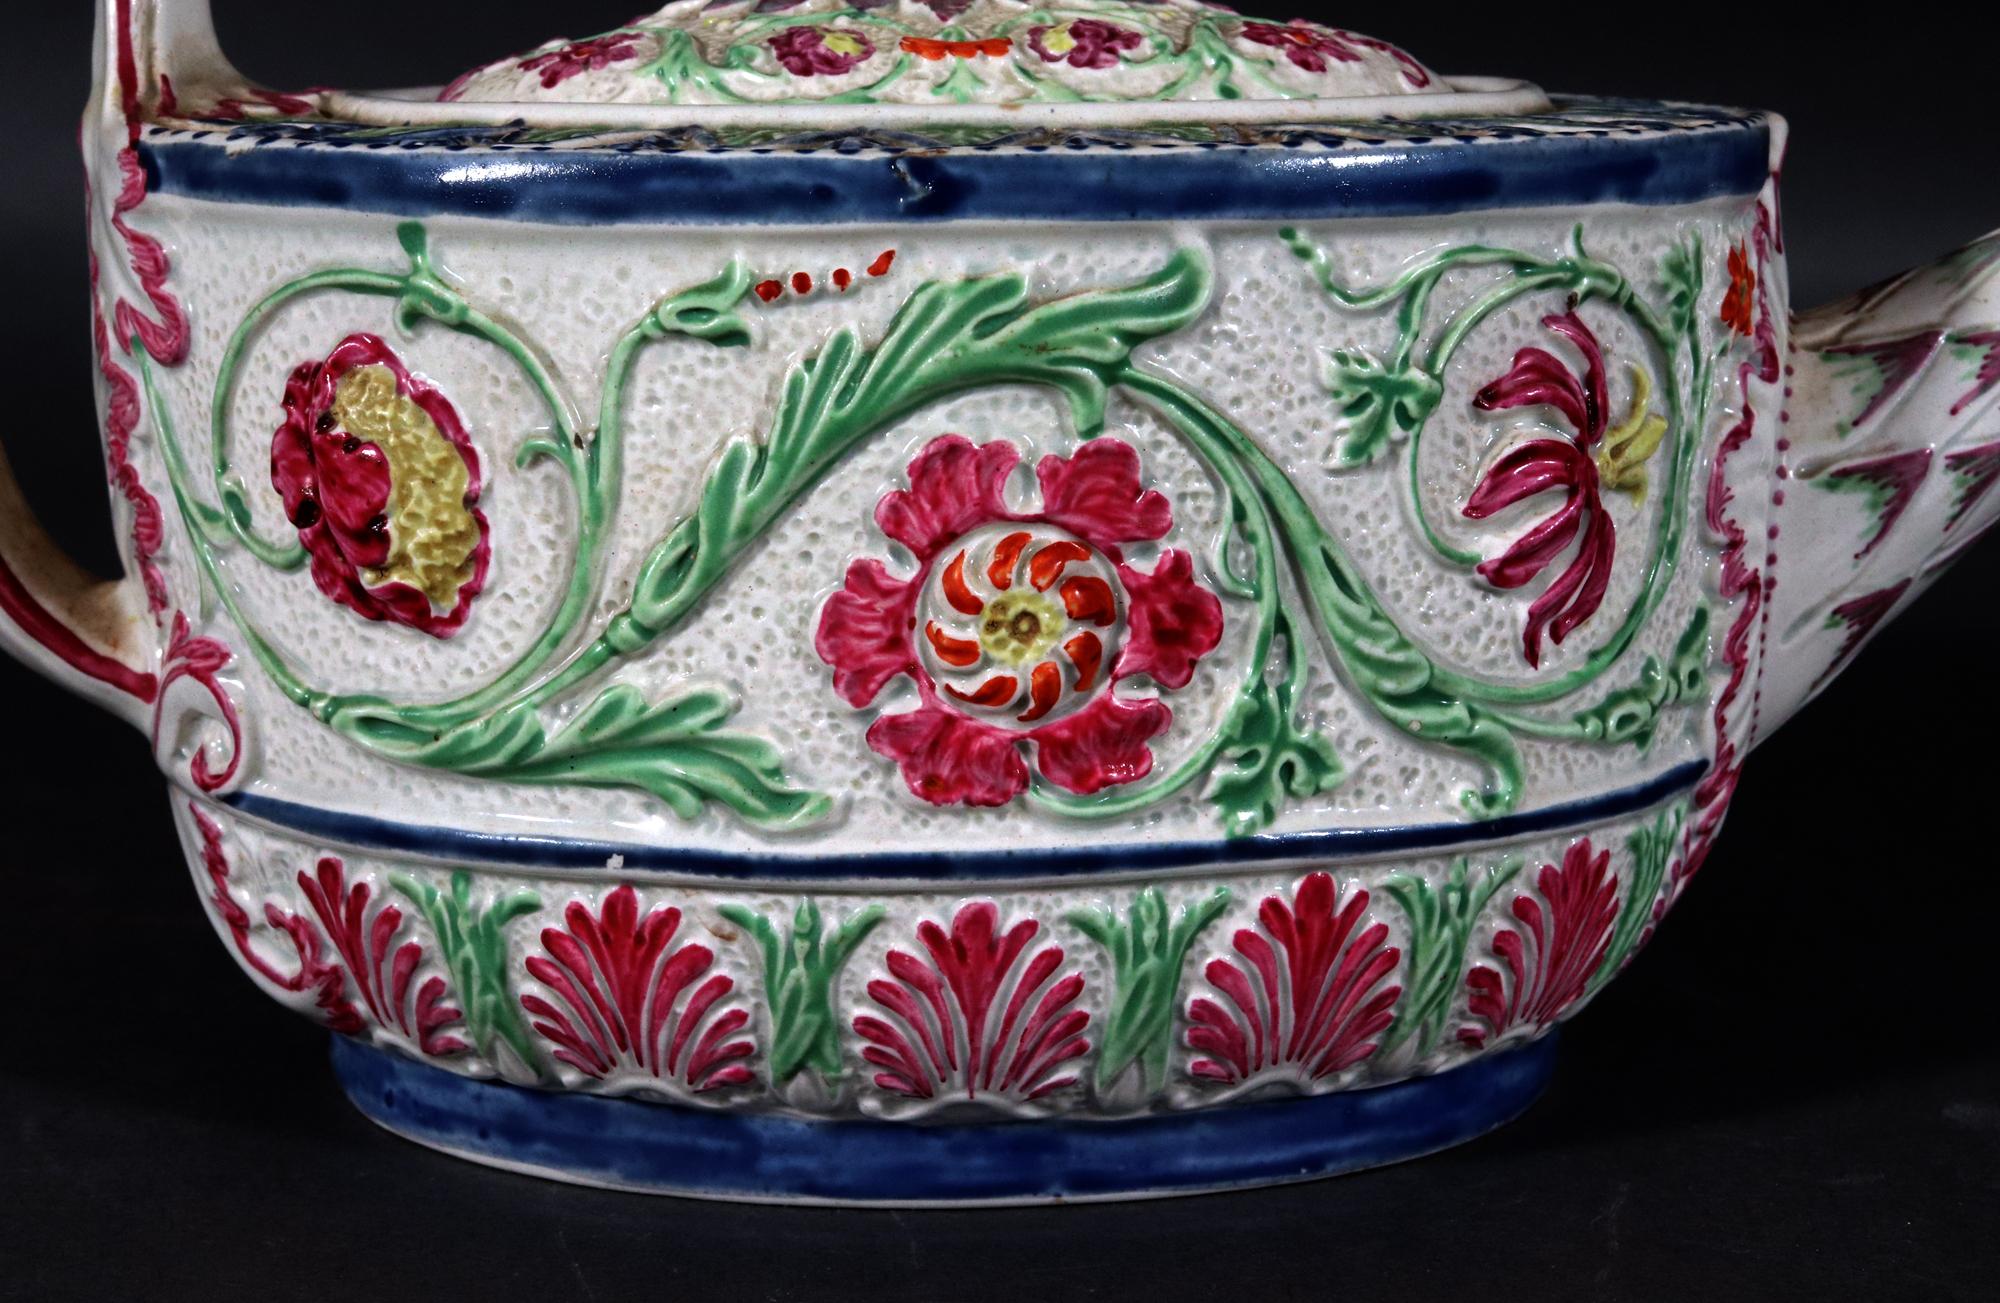 Hervorragend geformt gemalt Botanical Pearlware Teekanne & Deckel, 
Möglicherweise Robert Wilson,
CIRCA 1795

Eine fabelhaft geformte und bemalte Teekanne, die mit erhabenen Blumenköpfen verziert ist, mit einem Endstück in Form einer